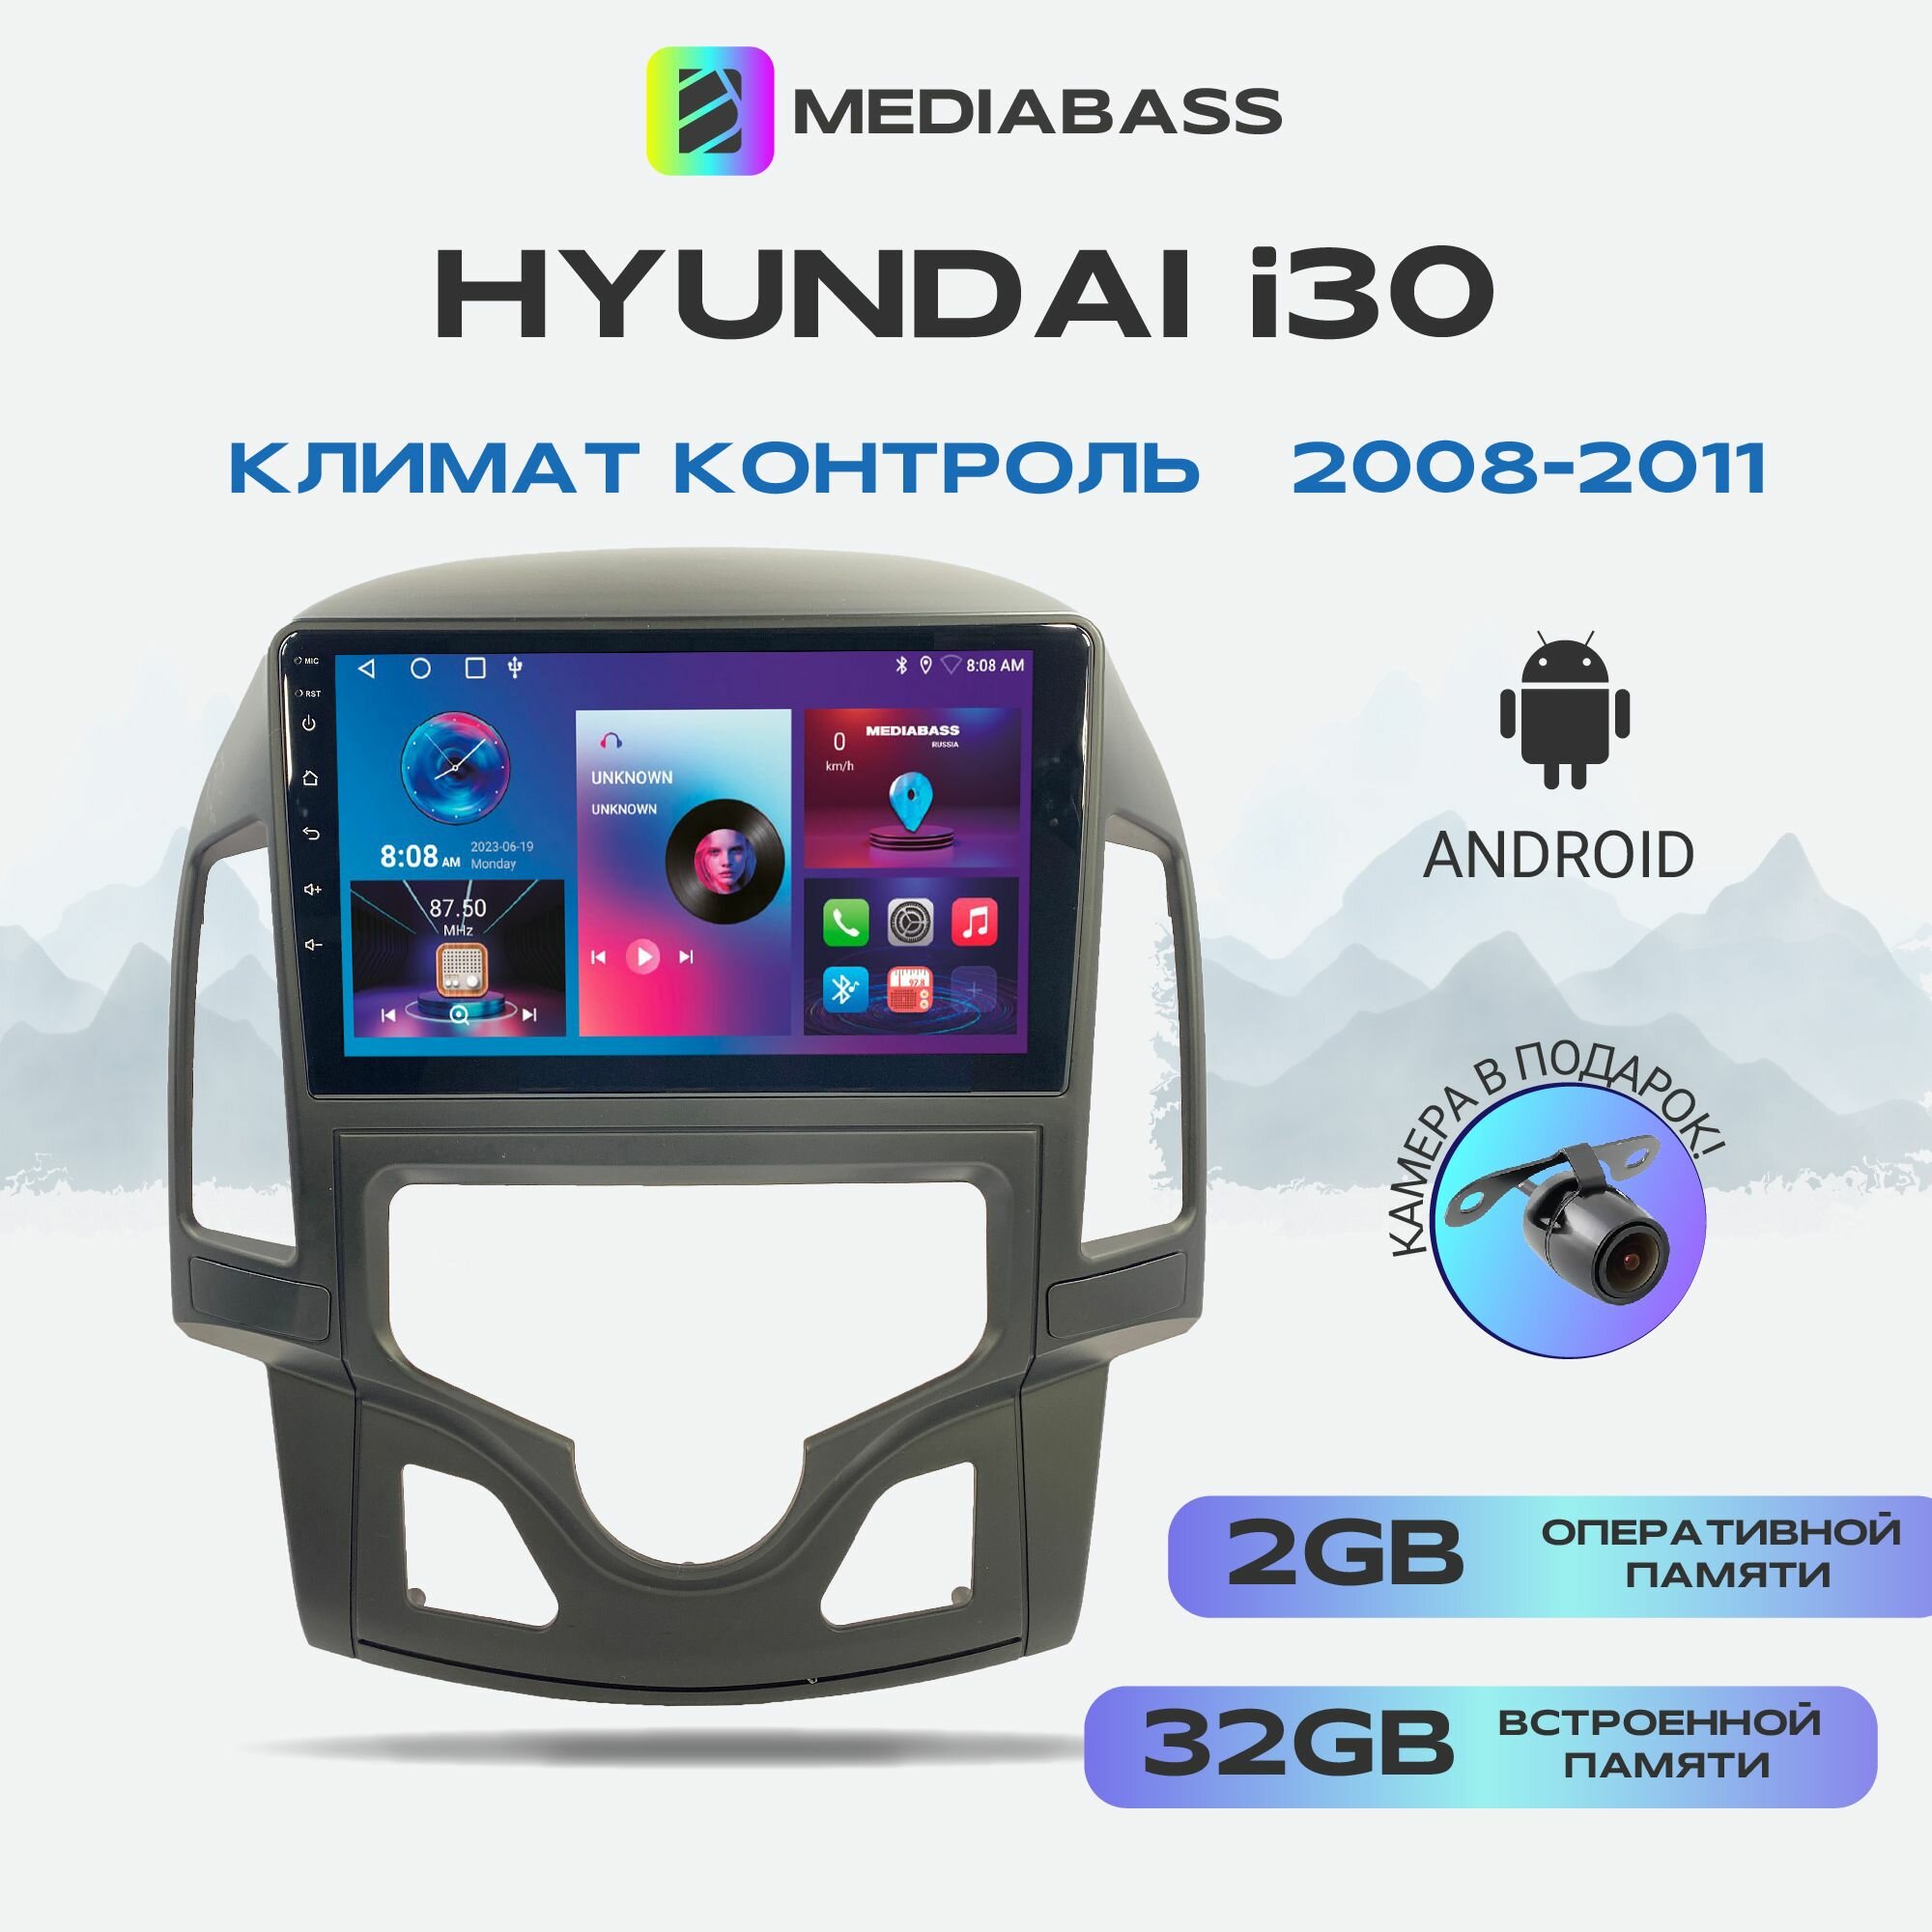 Автомагнитола Mediabass Hyundai i30 2008-2011 Климат контроль Android 12 2/32ГБ 4-ядерный процессор QLED экран с разрешением 1280*720 чип-усилитель YD7388 / Хендай i30